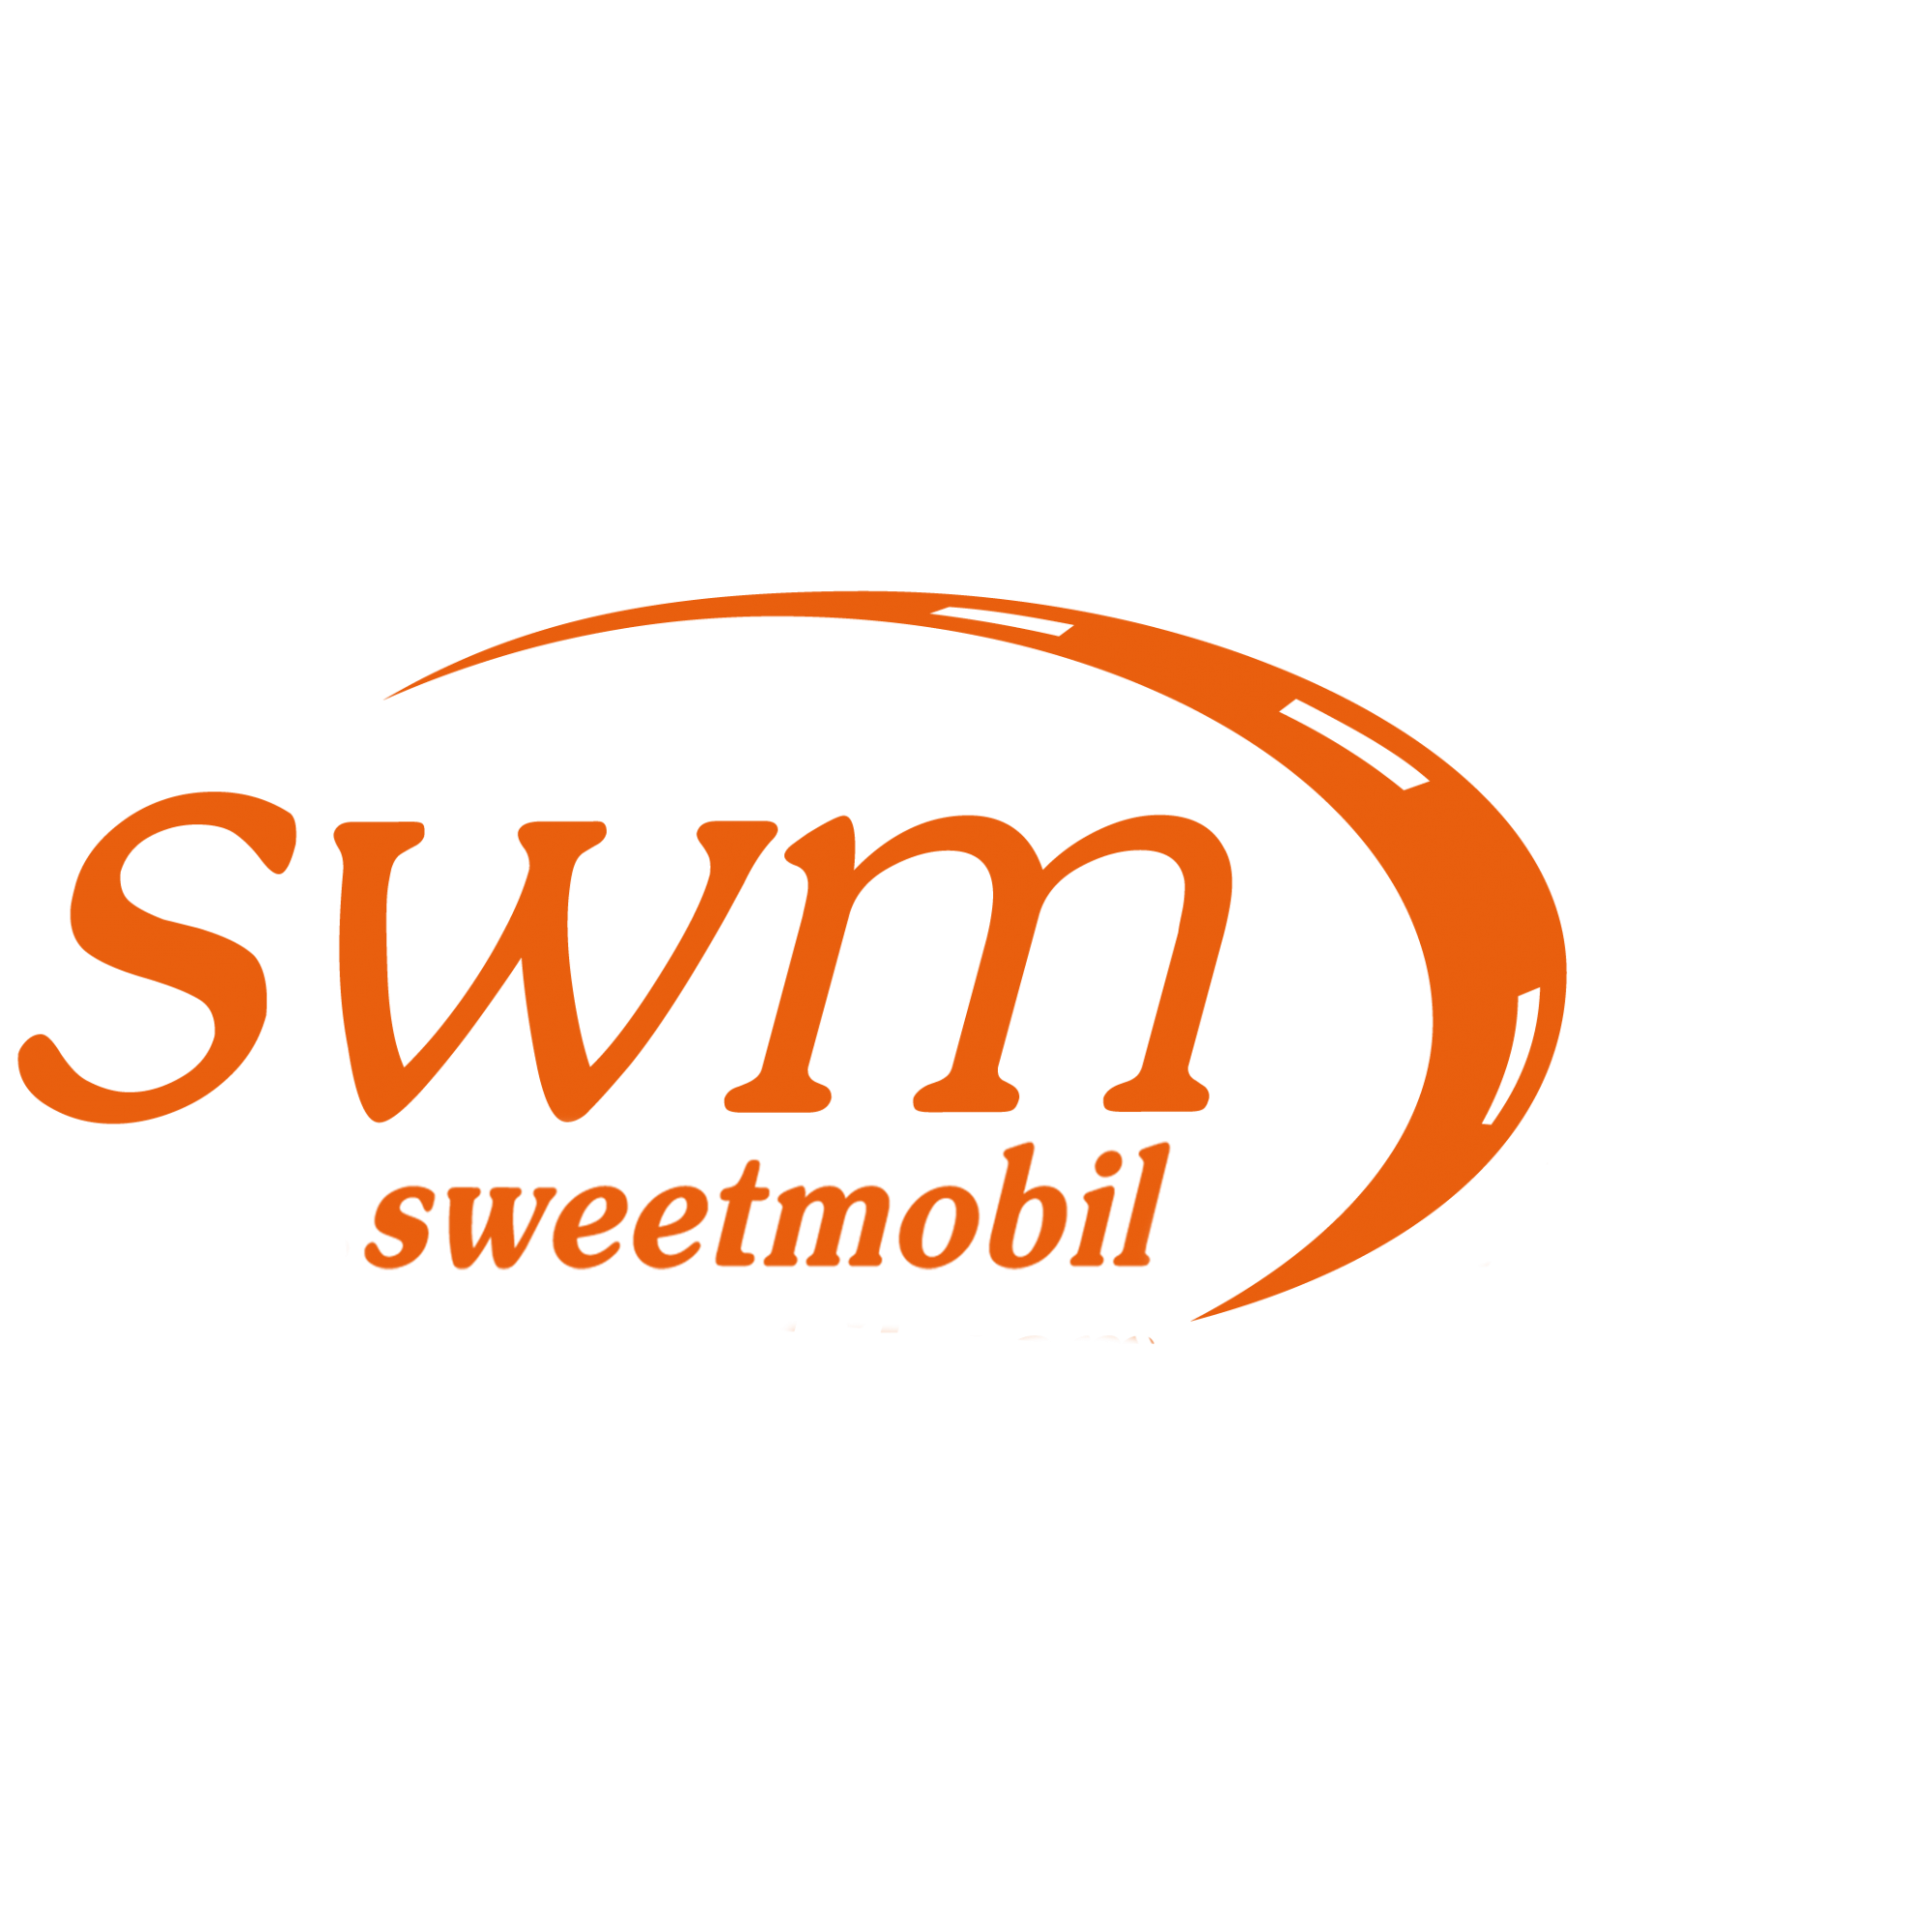 Sweetmobil